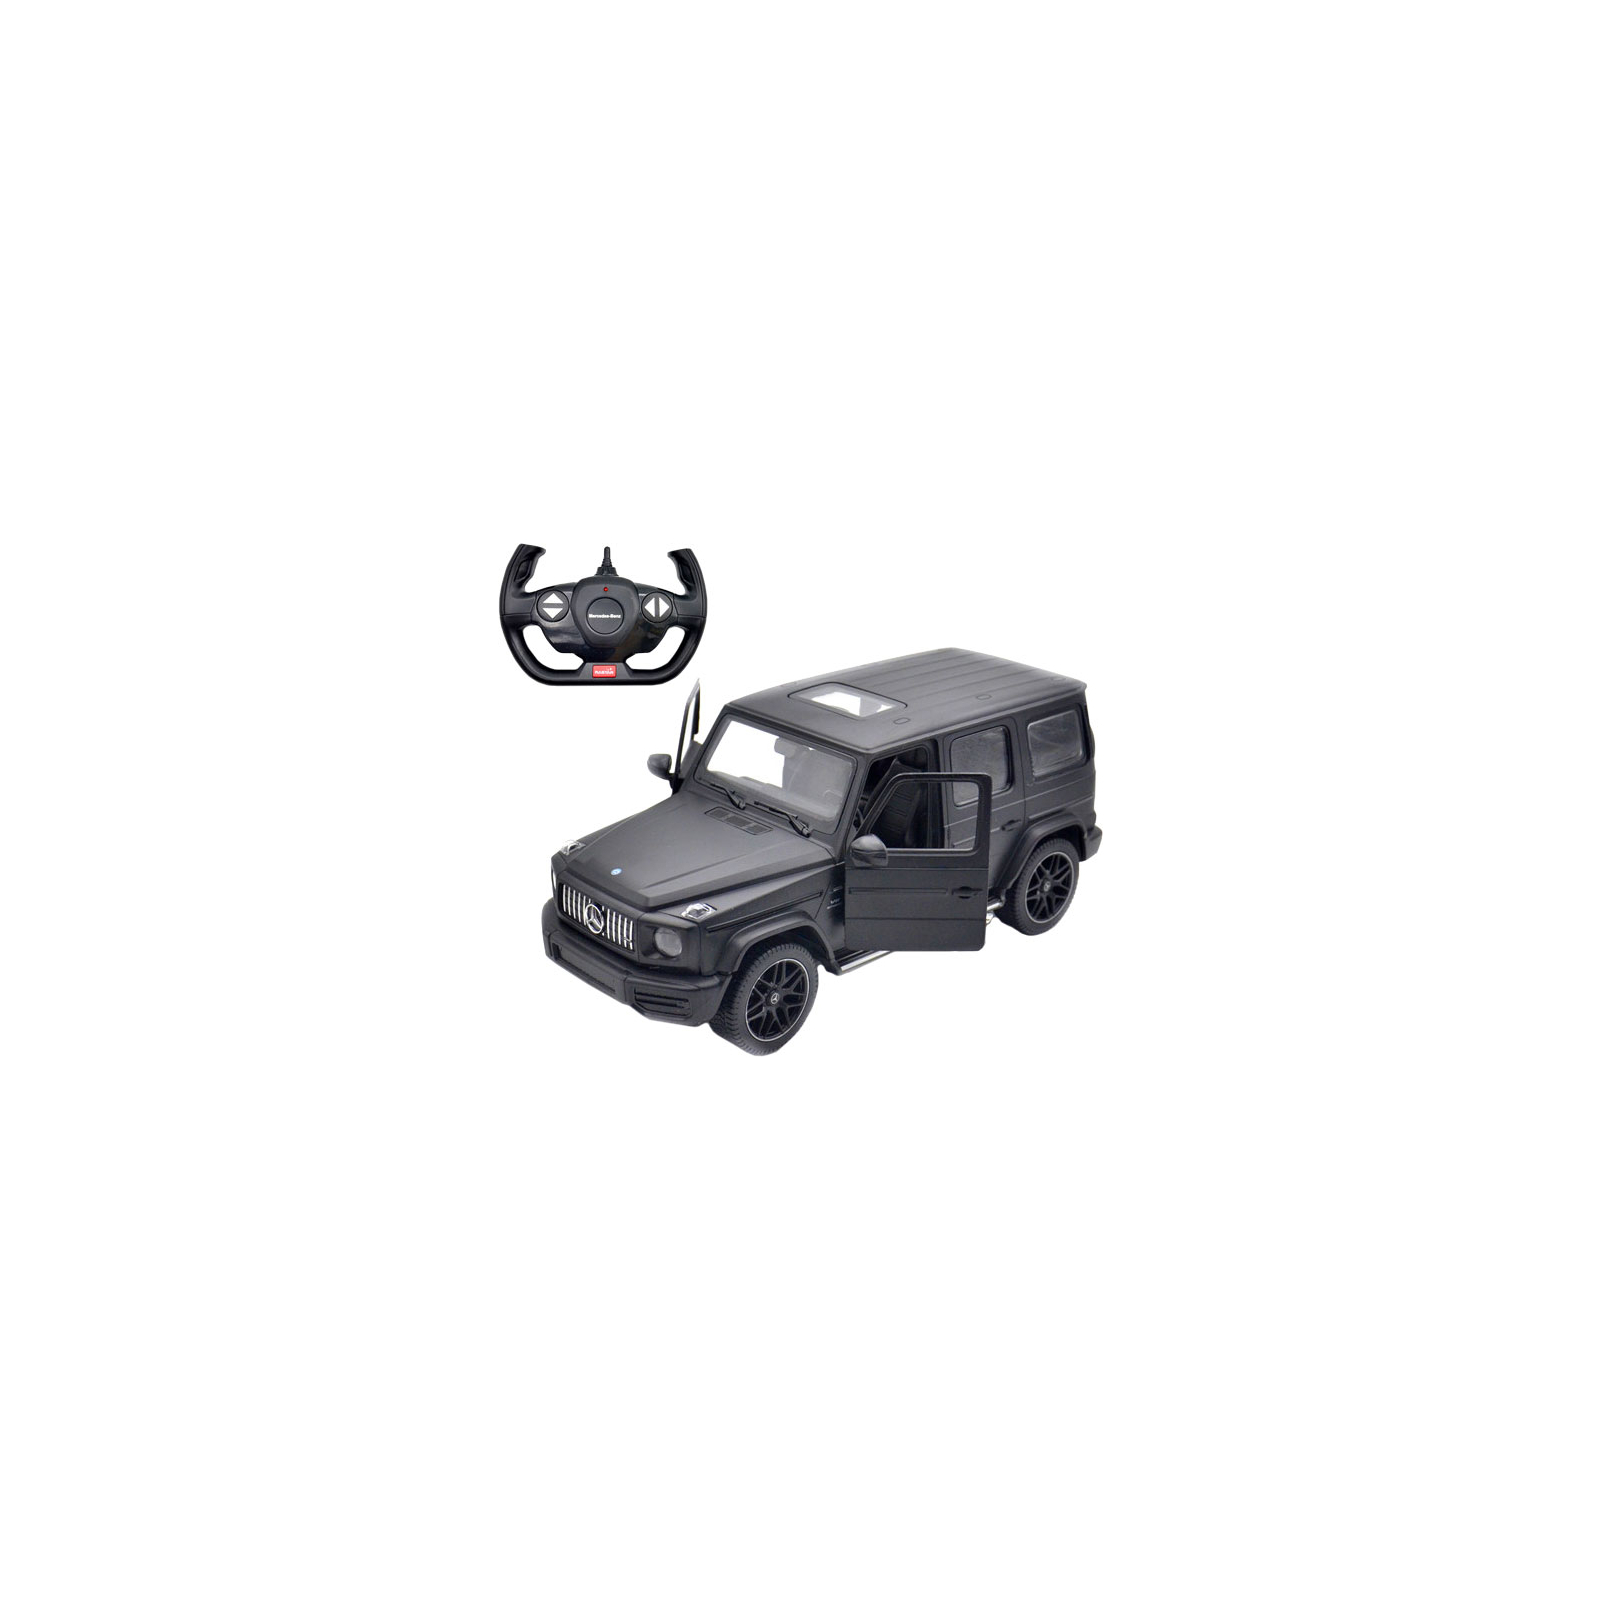 Радиоуправляемая игрушка Rastar Mercedes-Benz G63 AMG 1:14 черный (95760 black)